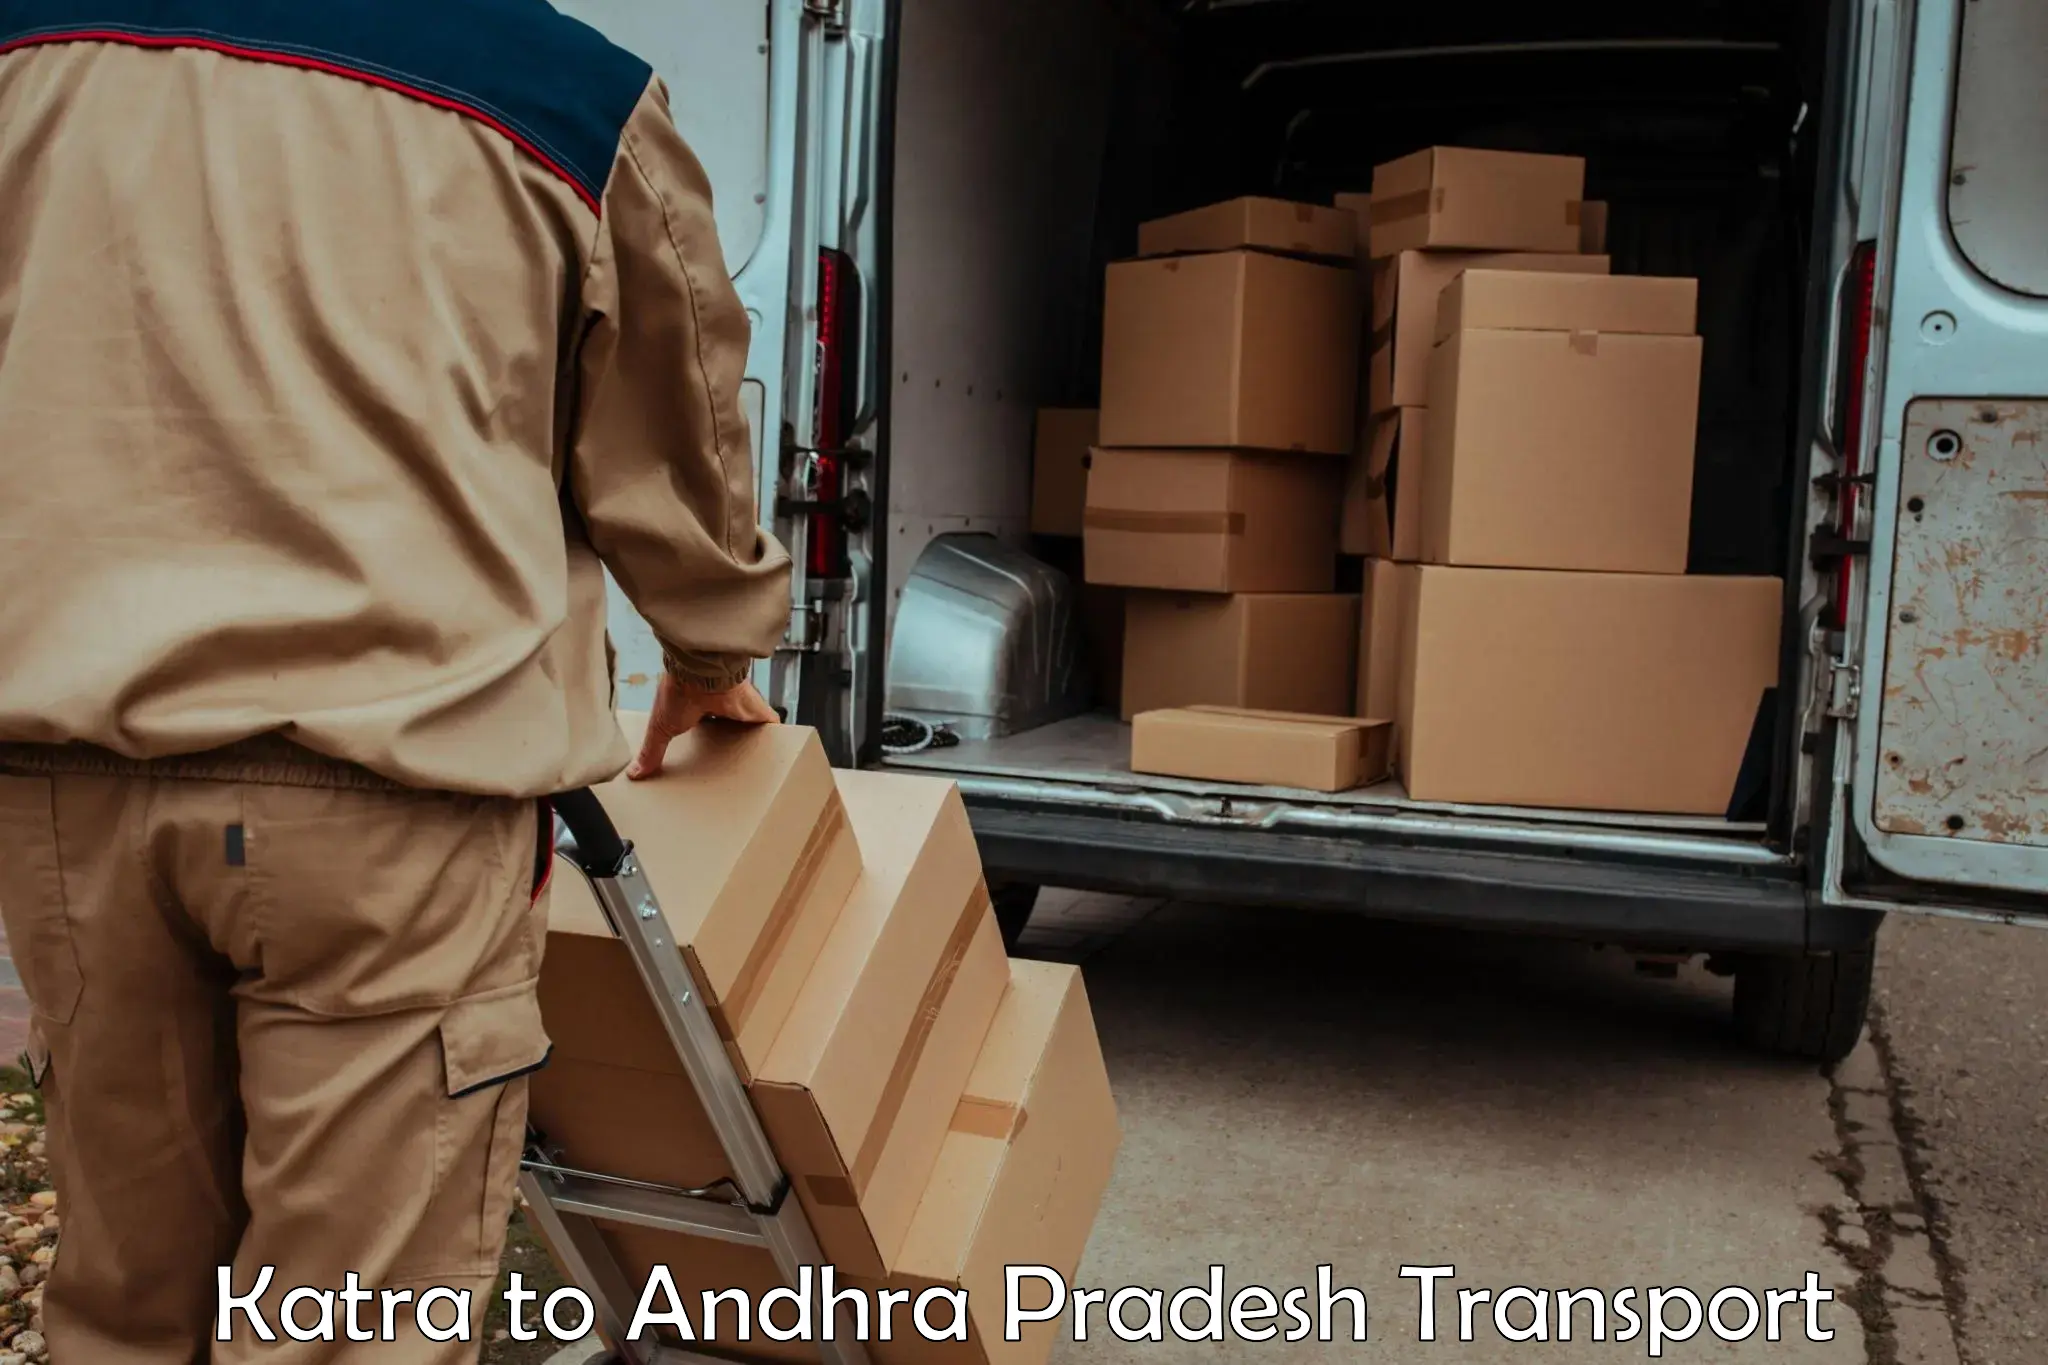 Logistics transportation services Katra to Bhimavaram